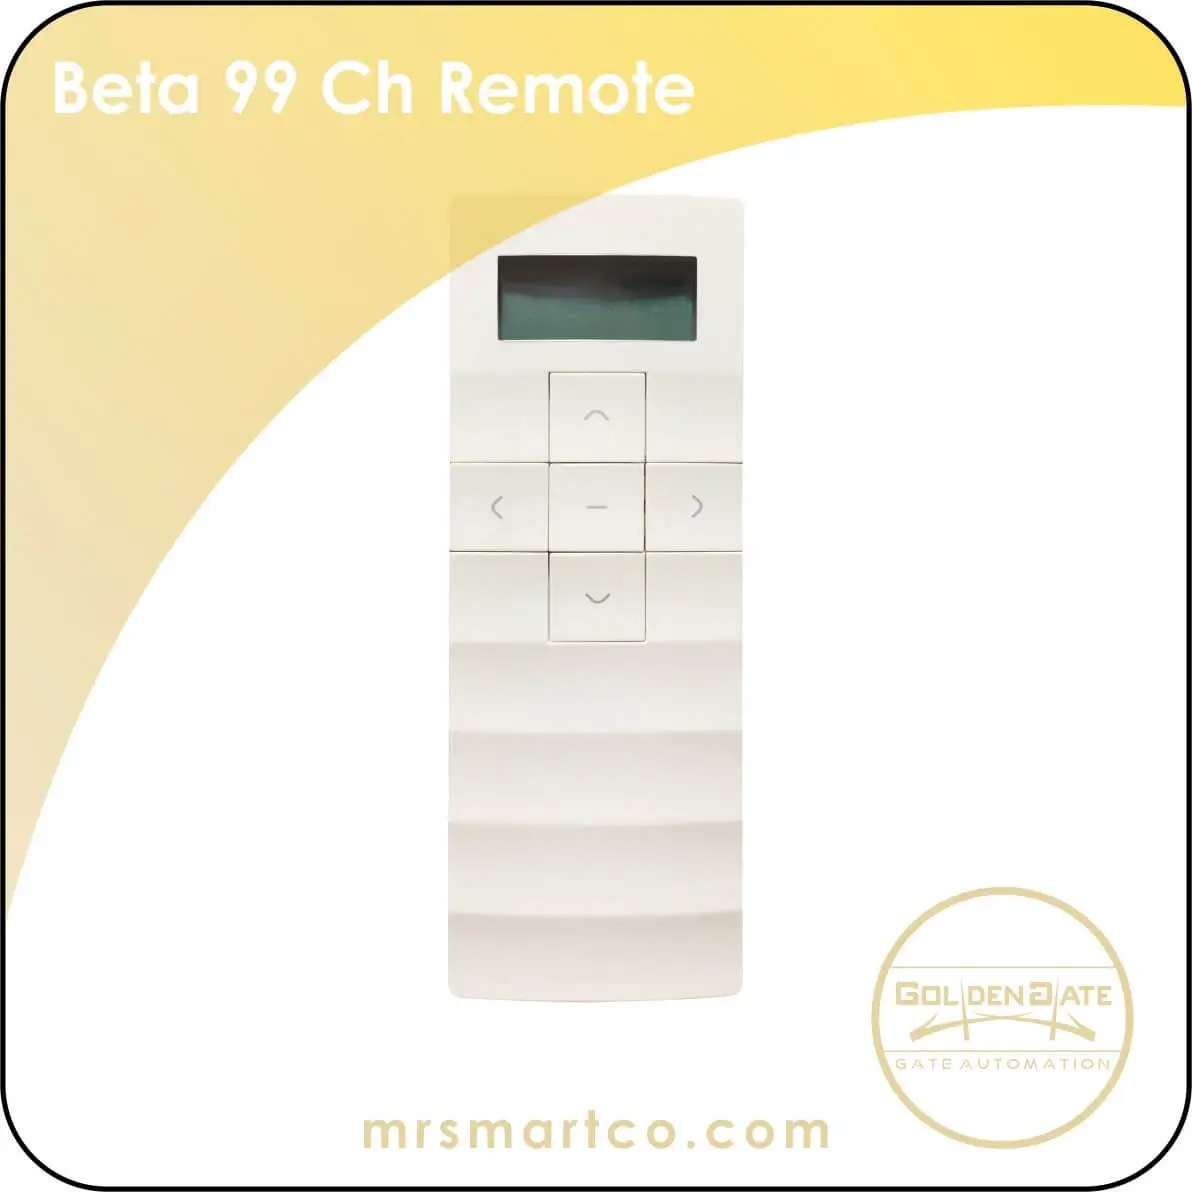 beta 99 channel remote